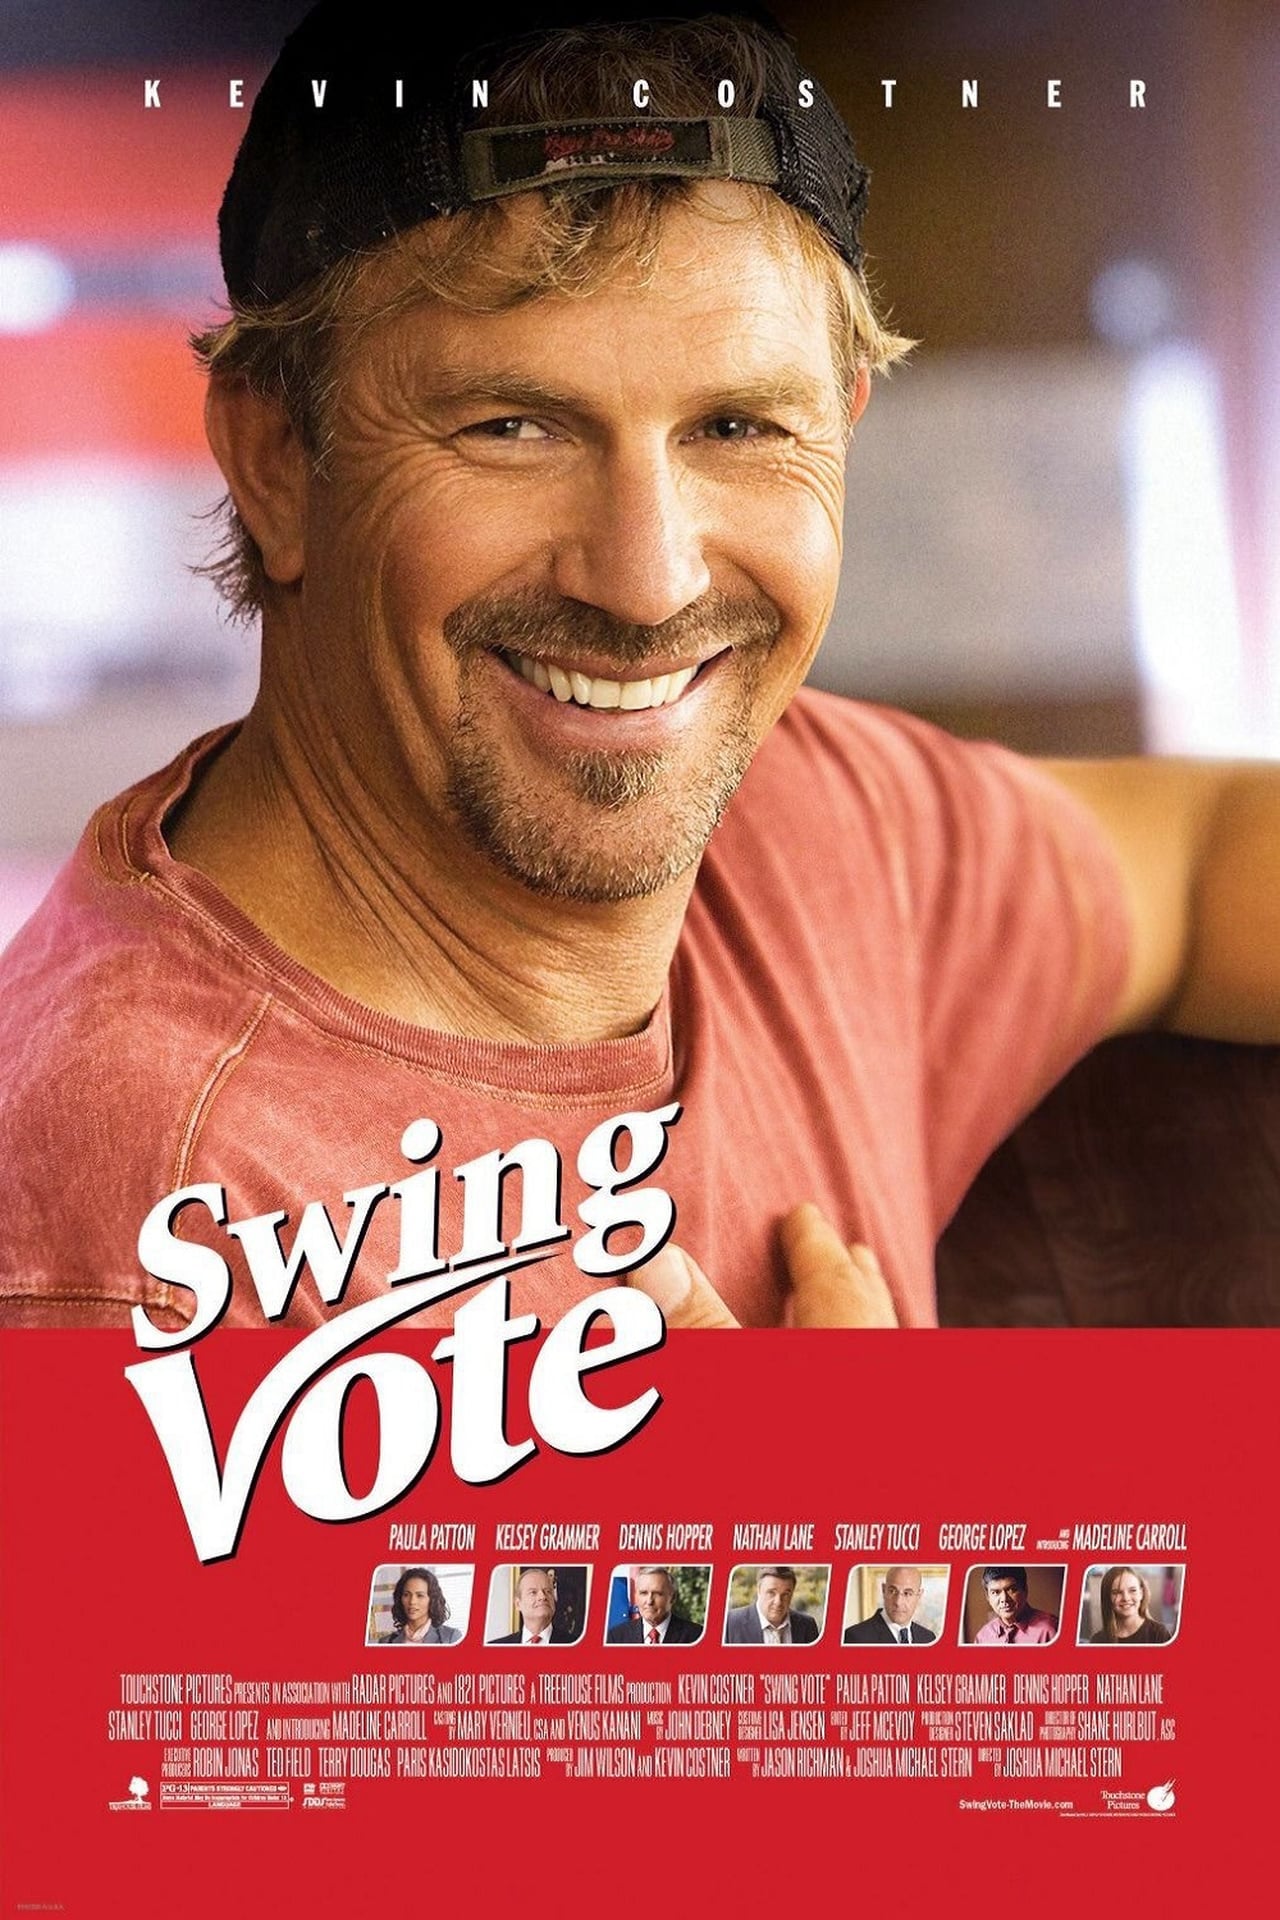 Plakat von "Swing Vote - Die beste Wahl"